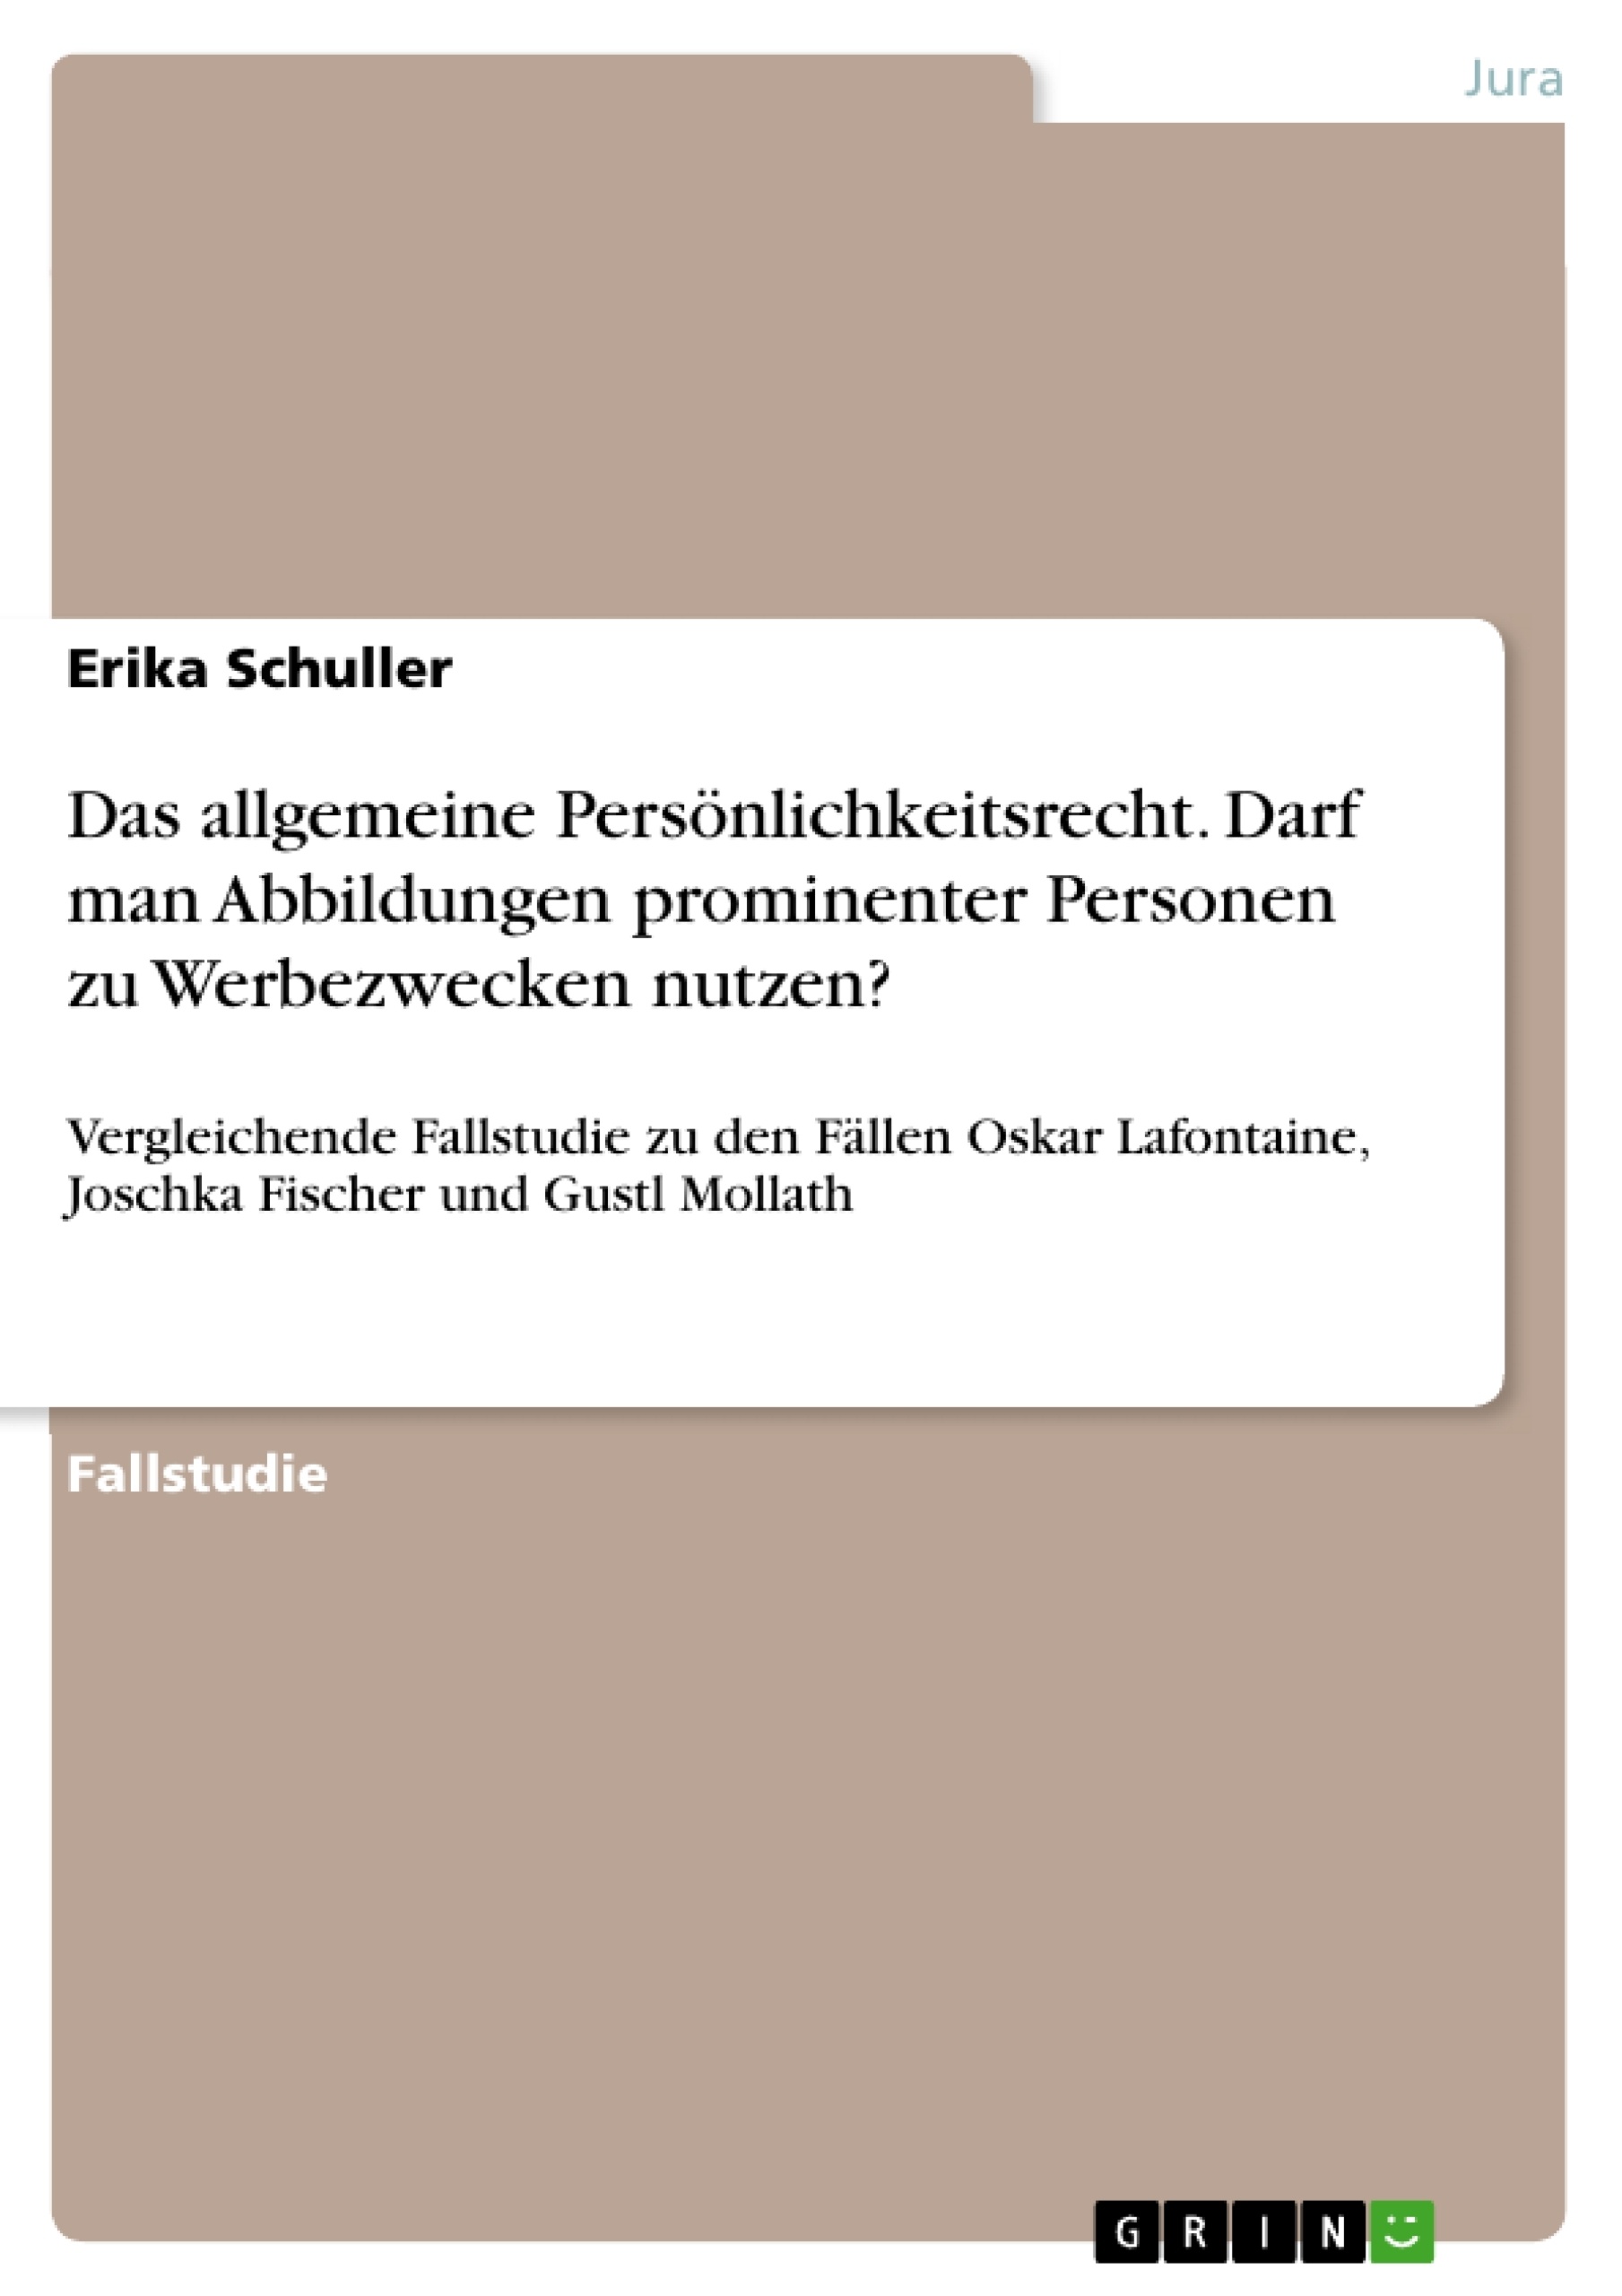 Title: Das allgemeine Persönlichkeitsrecht. Darf man Abbildungen prominenter Personen zu Werbezwecken nutzen?